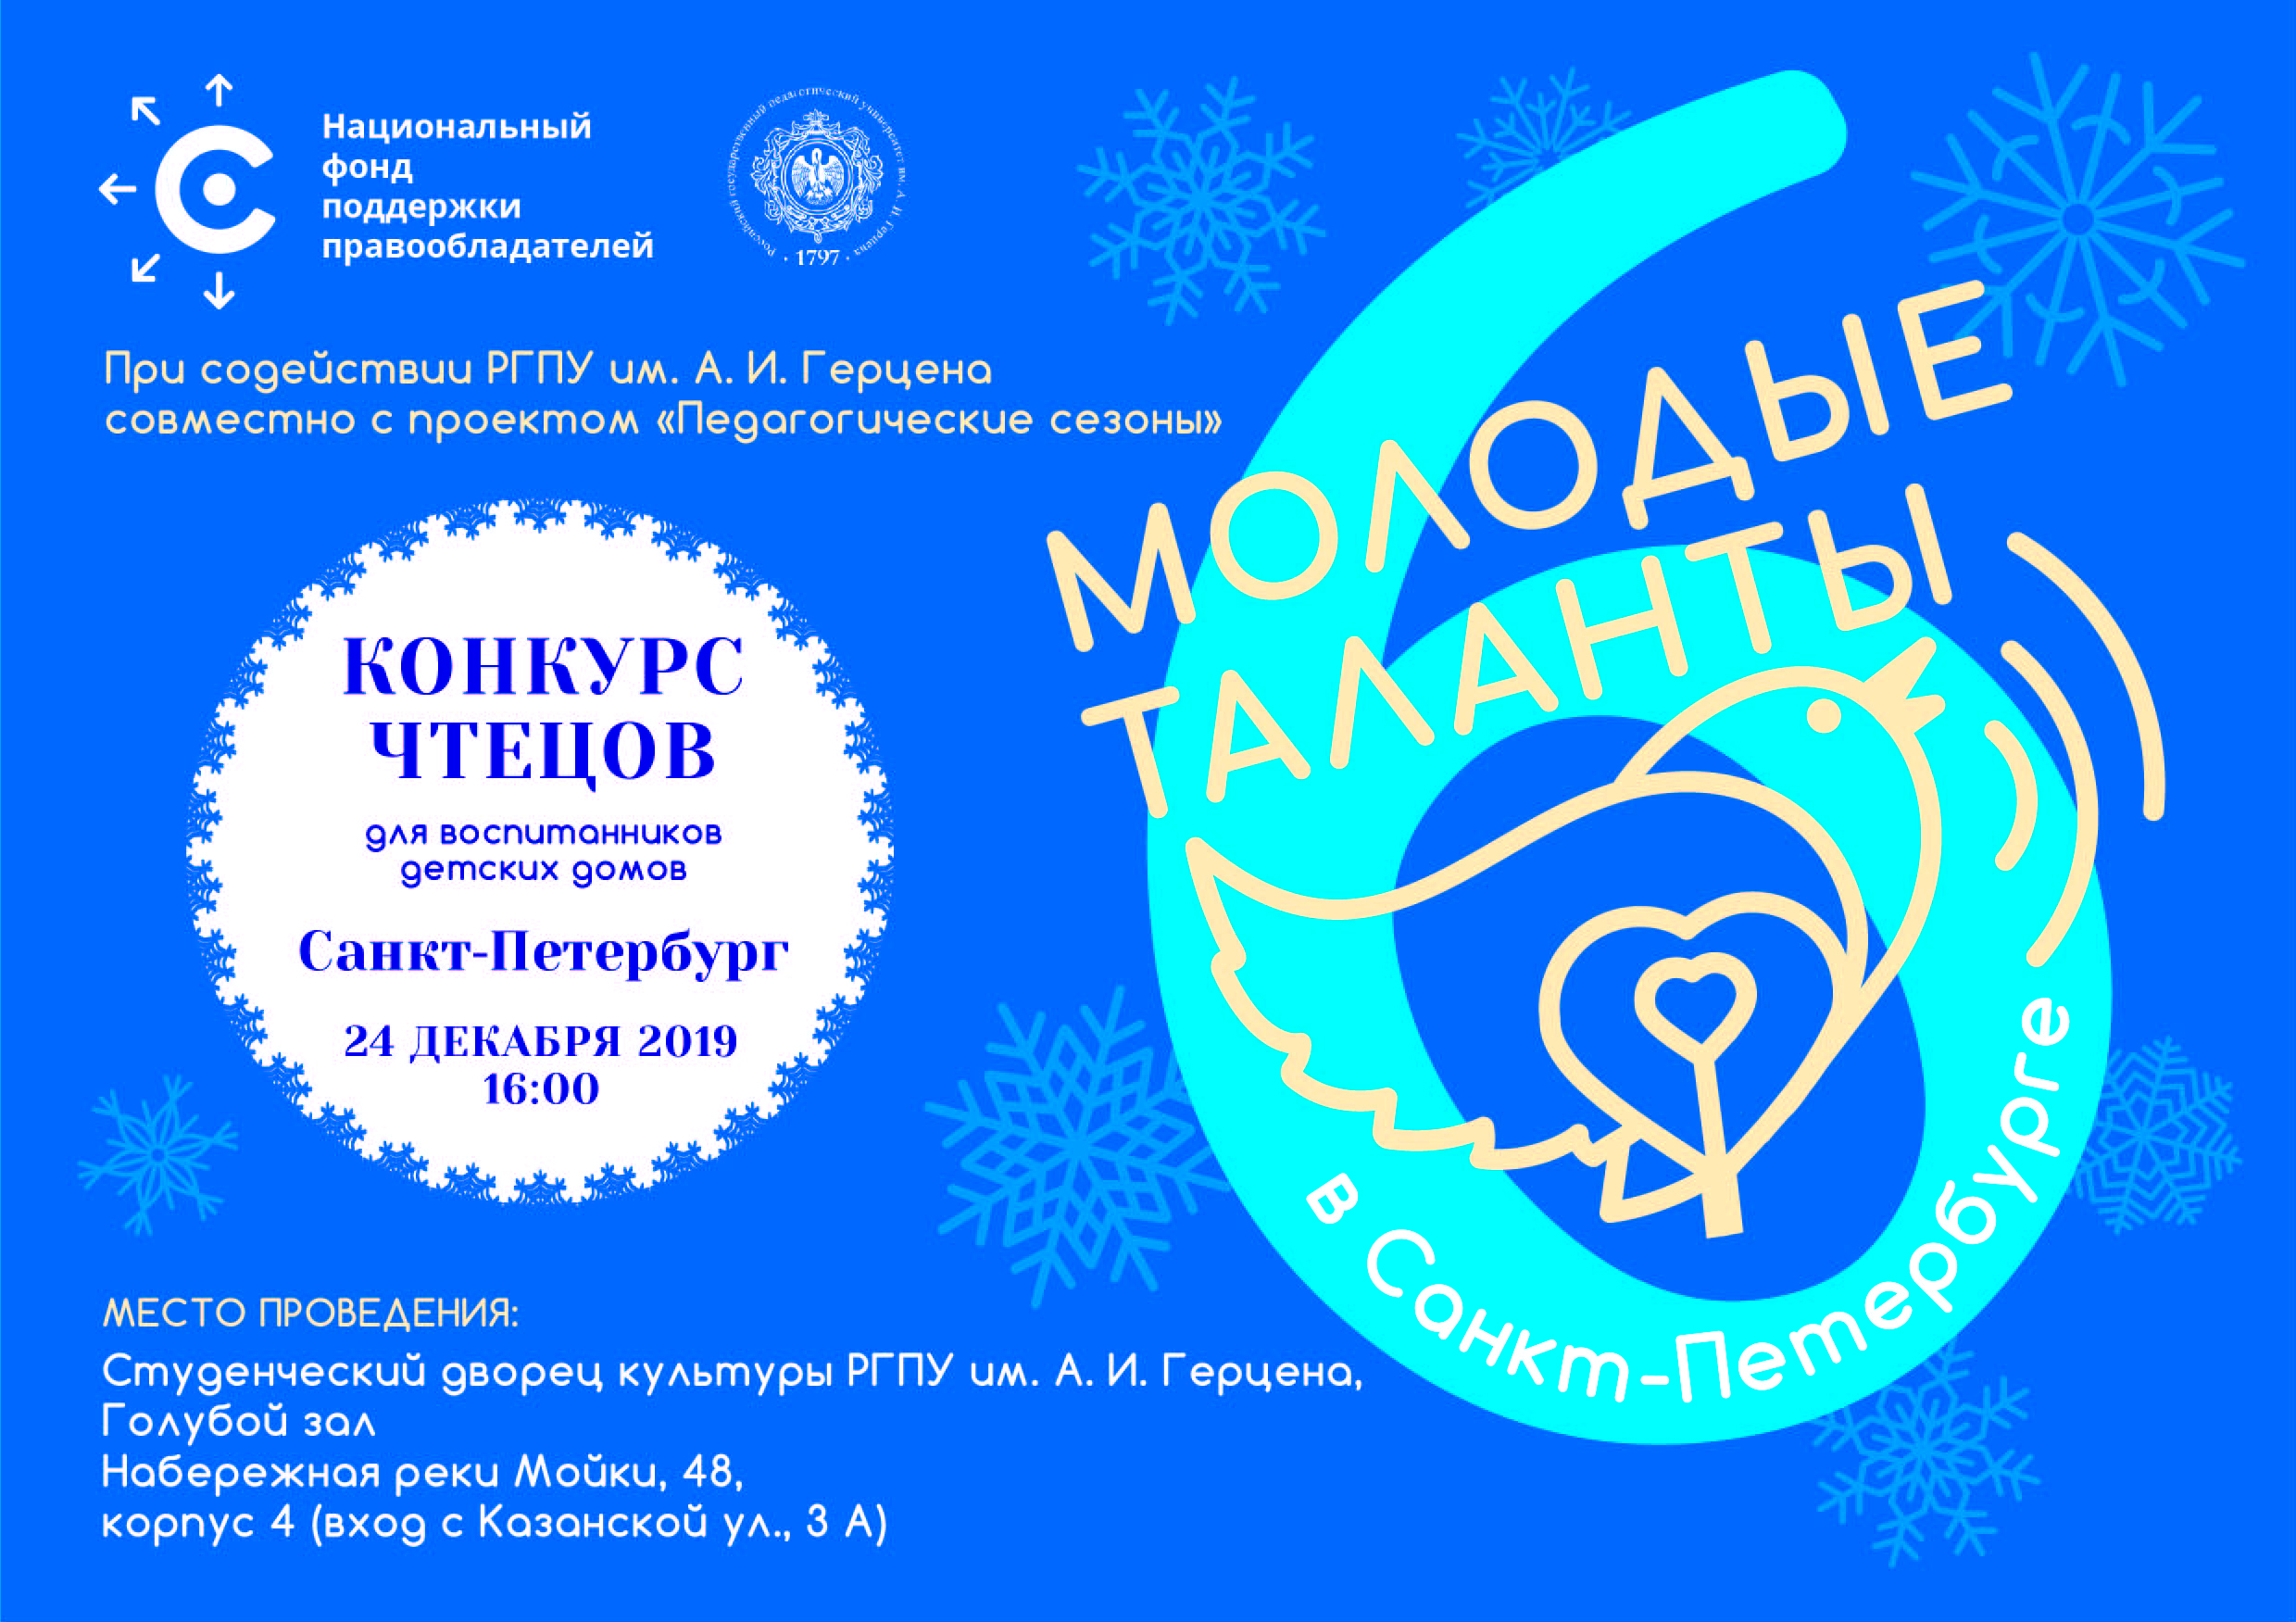 НФПП организует конкурс чтецов «Молодые таланты 6» в Санкт-Петербурге